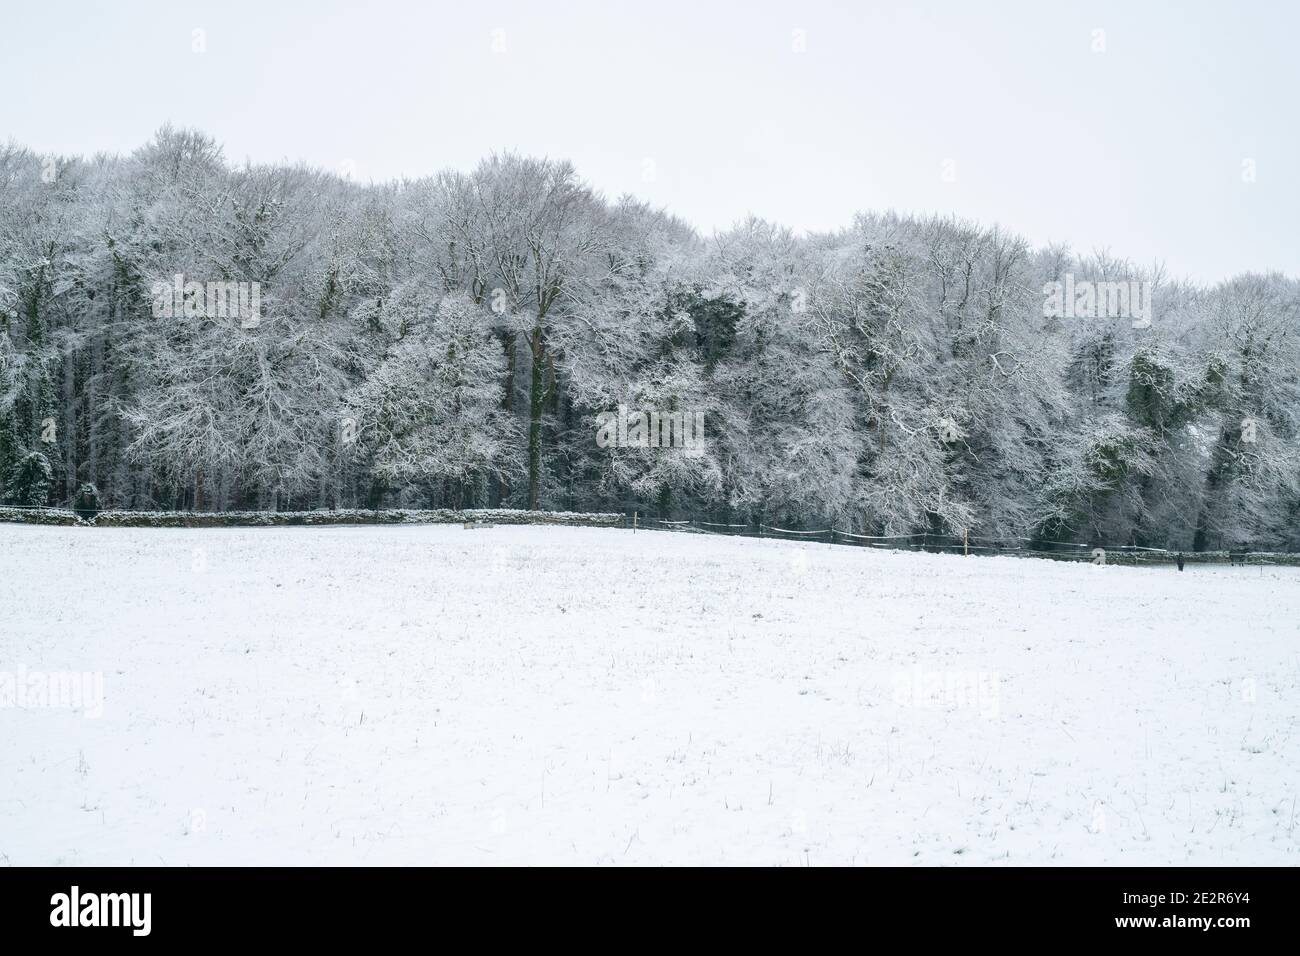 La neige couvrait les arbres et le champ en décembre dans la campagne des cotswolds. Près de Upper Slaughter, Cotswolds, Gloucestershire, Angleterre Banque D'Images